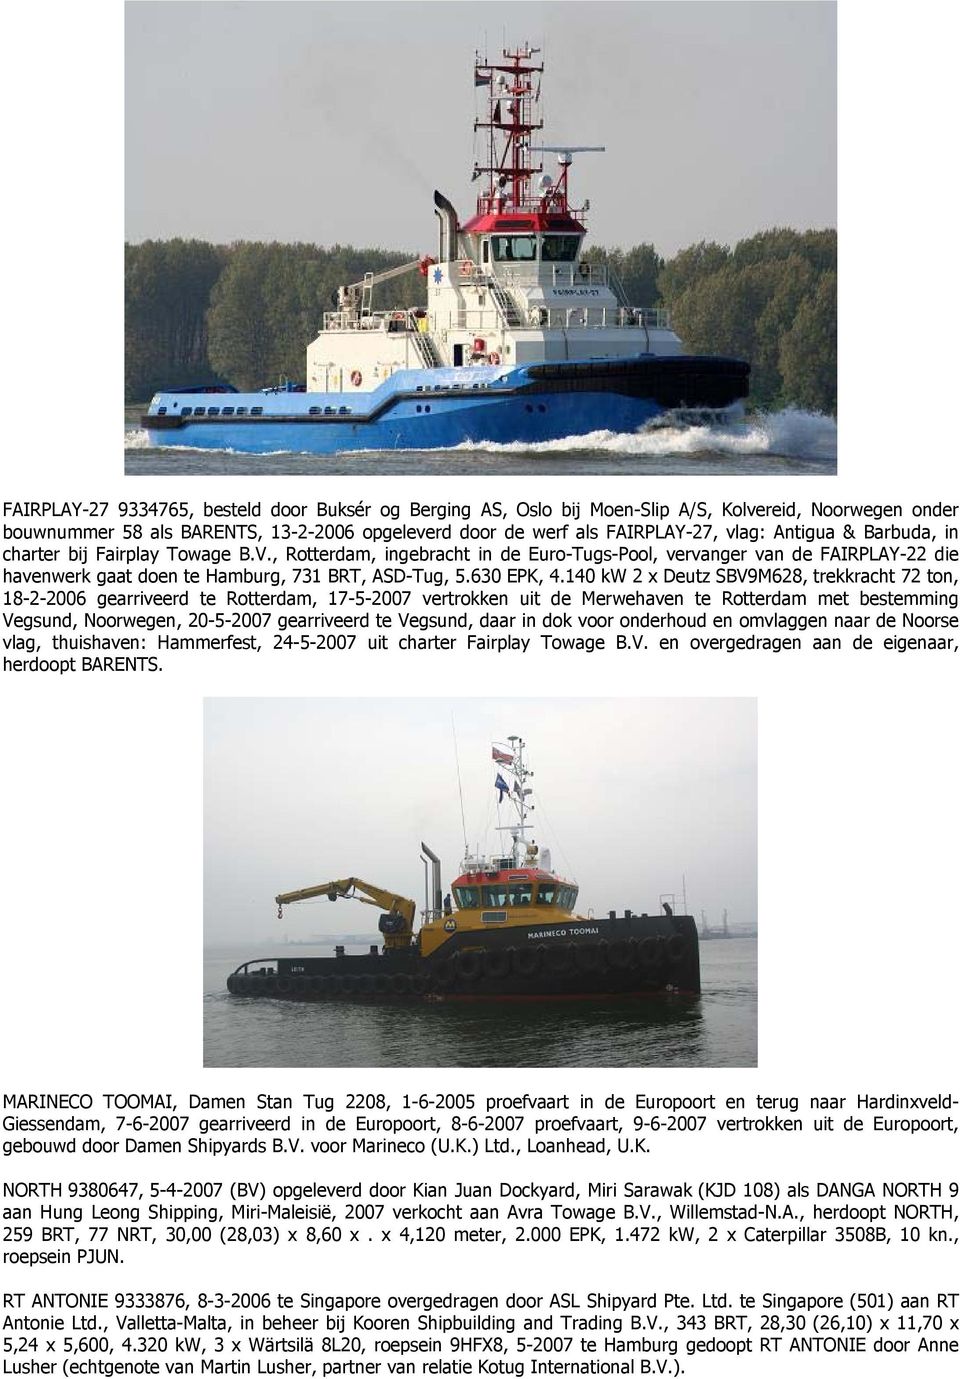 140 kw 2 x Deutz SBV9M628, trekkracht 72 ton, 18-2-2006 gearriveerd te Rotterdam, 17-5-2007 vertrokken uit de Merwehaven te Rotterdam met bestemming Vegsund, Noorwegen, 20-5-2007 gearriveerd te